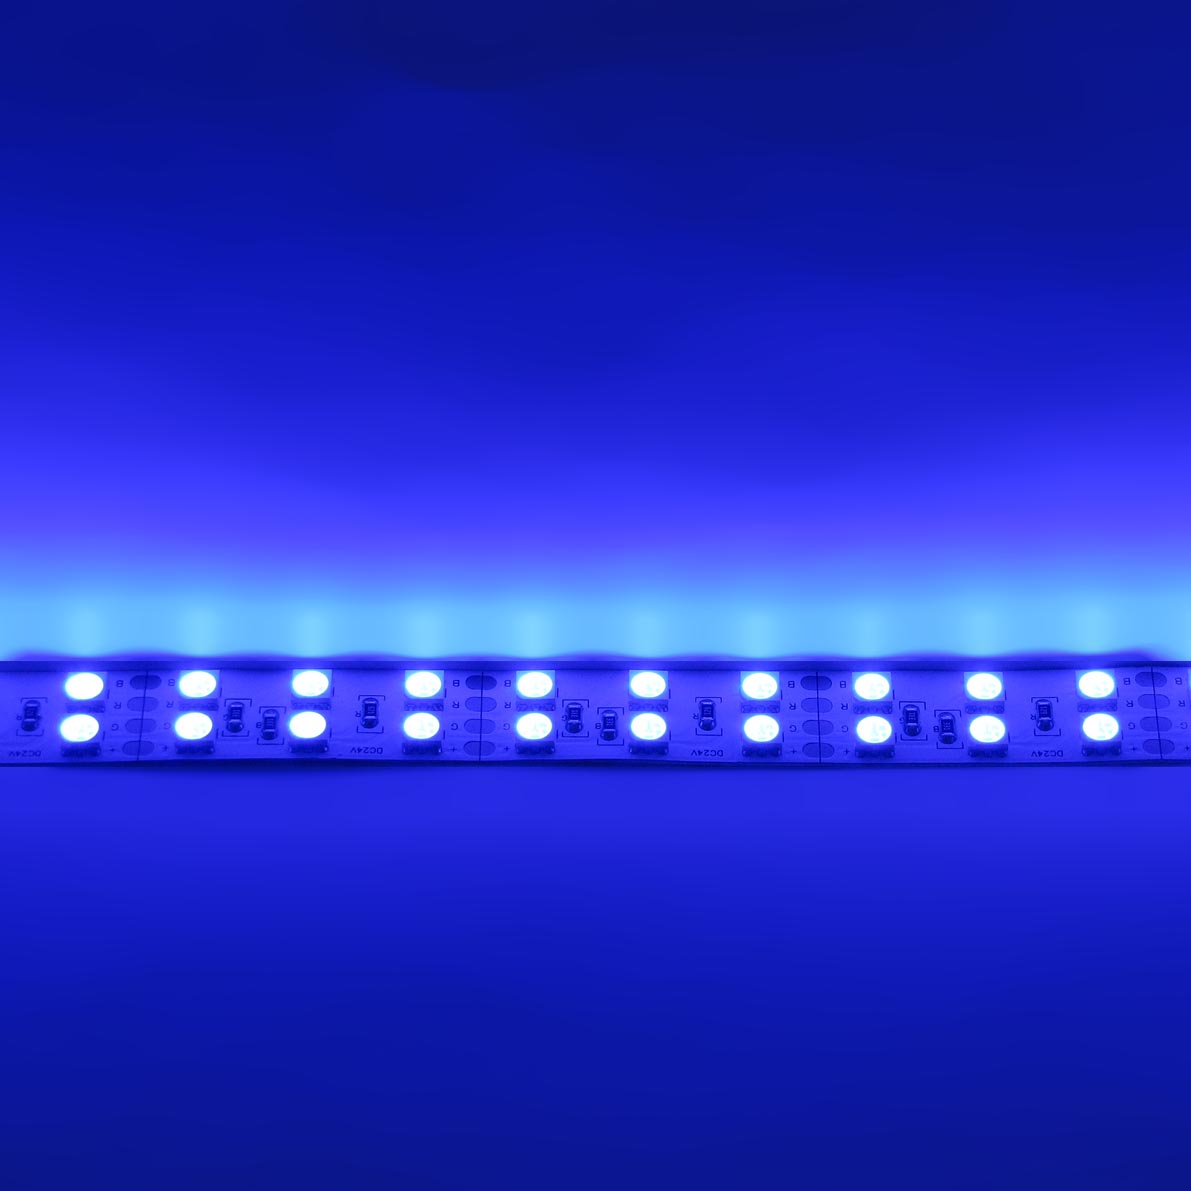 светодиодная лента standart pro class, 5050, 144 led/m, rgb, 24v, ip33, артикул 31013